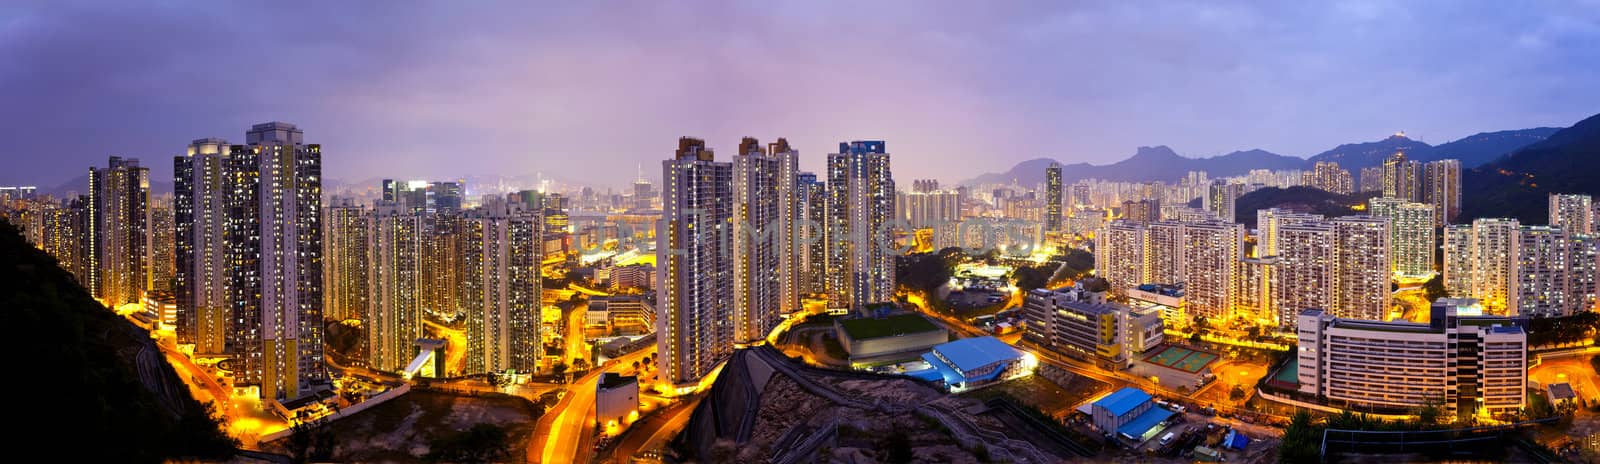 Hong Kong apartments at night, under the Lion Rock Hill. by kawing921